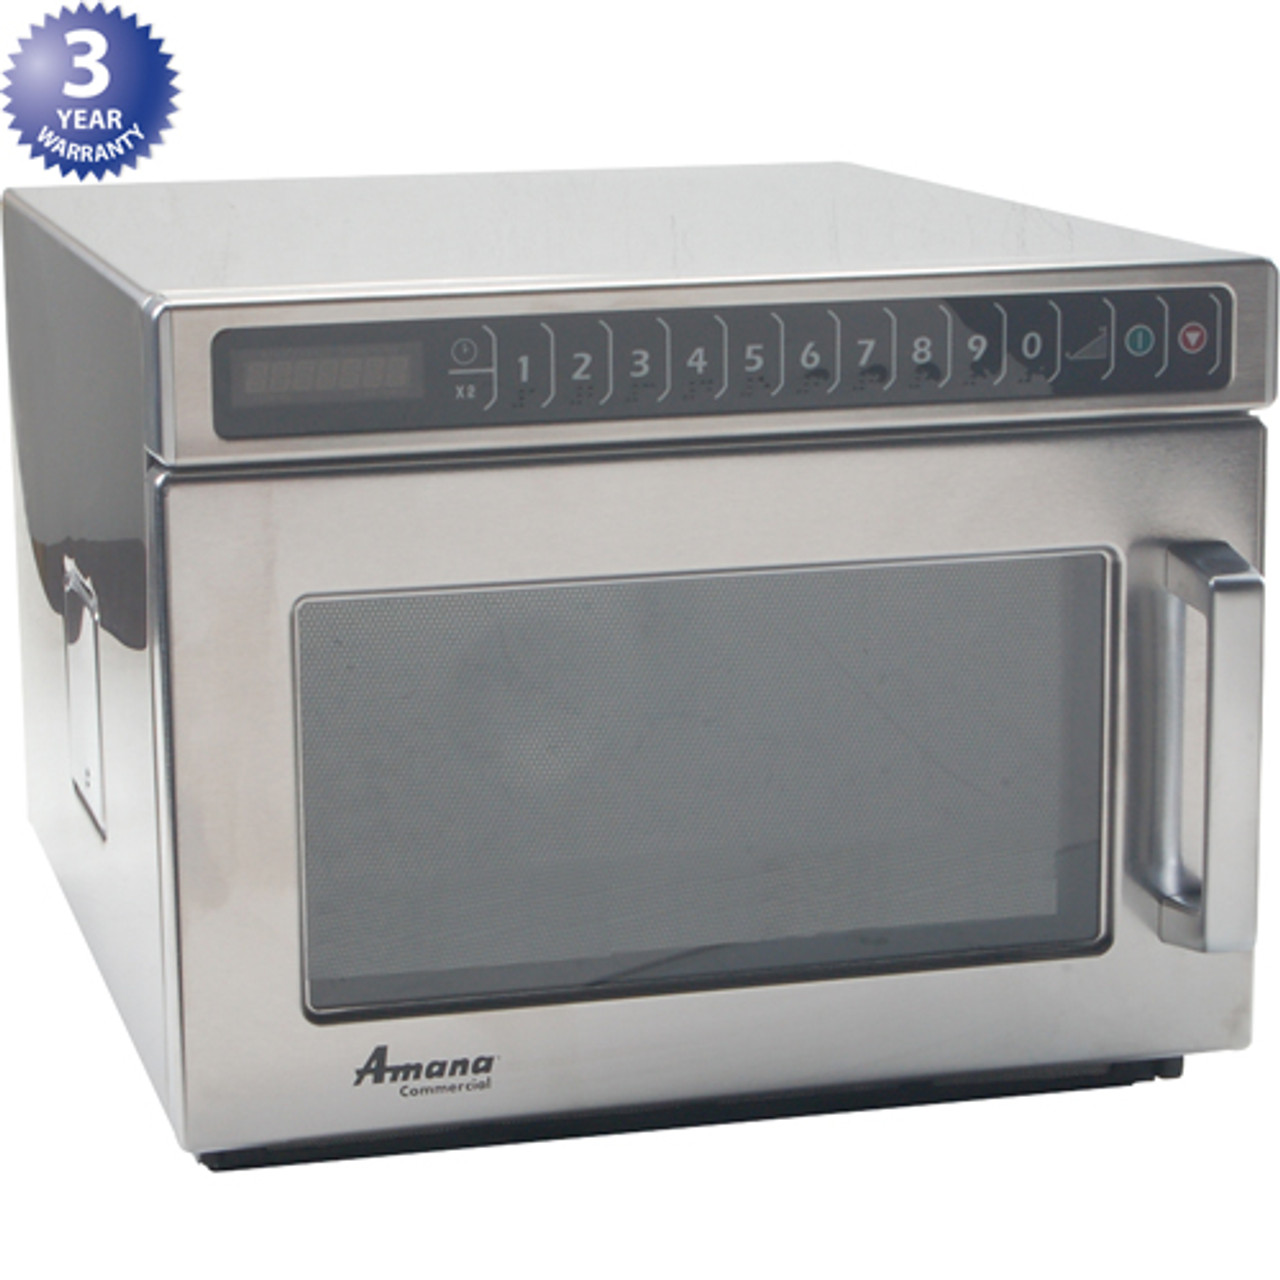 Amana HDC12A2 - Microwave , Hdc12A2,1200W,120V